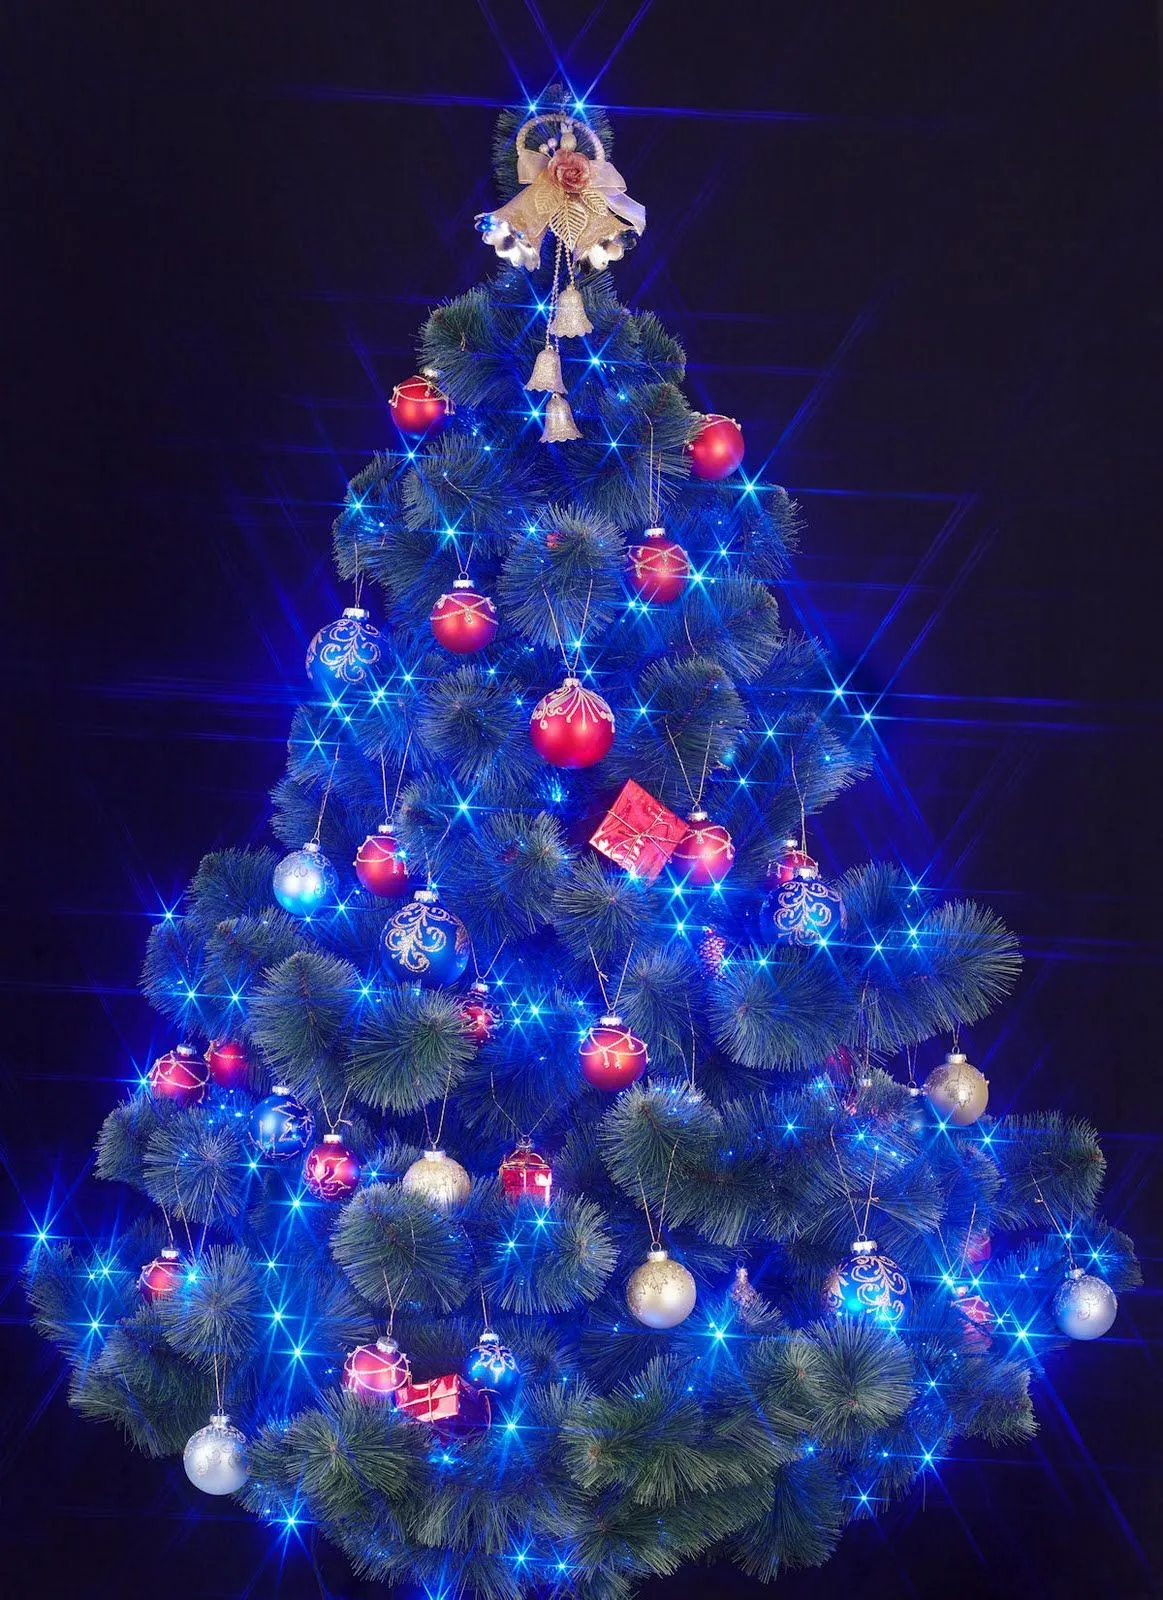 Especial de Fin de Año (Fotos de Árboles de Navidad) | Banco de ...